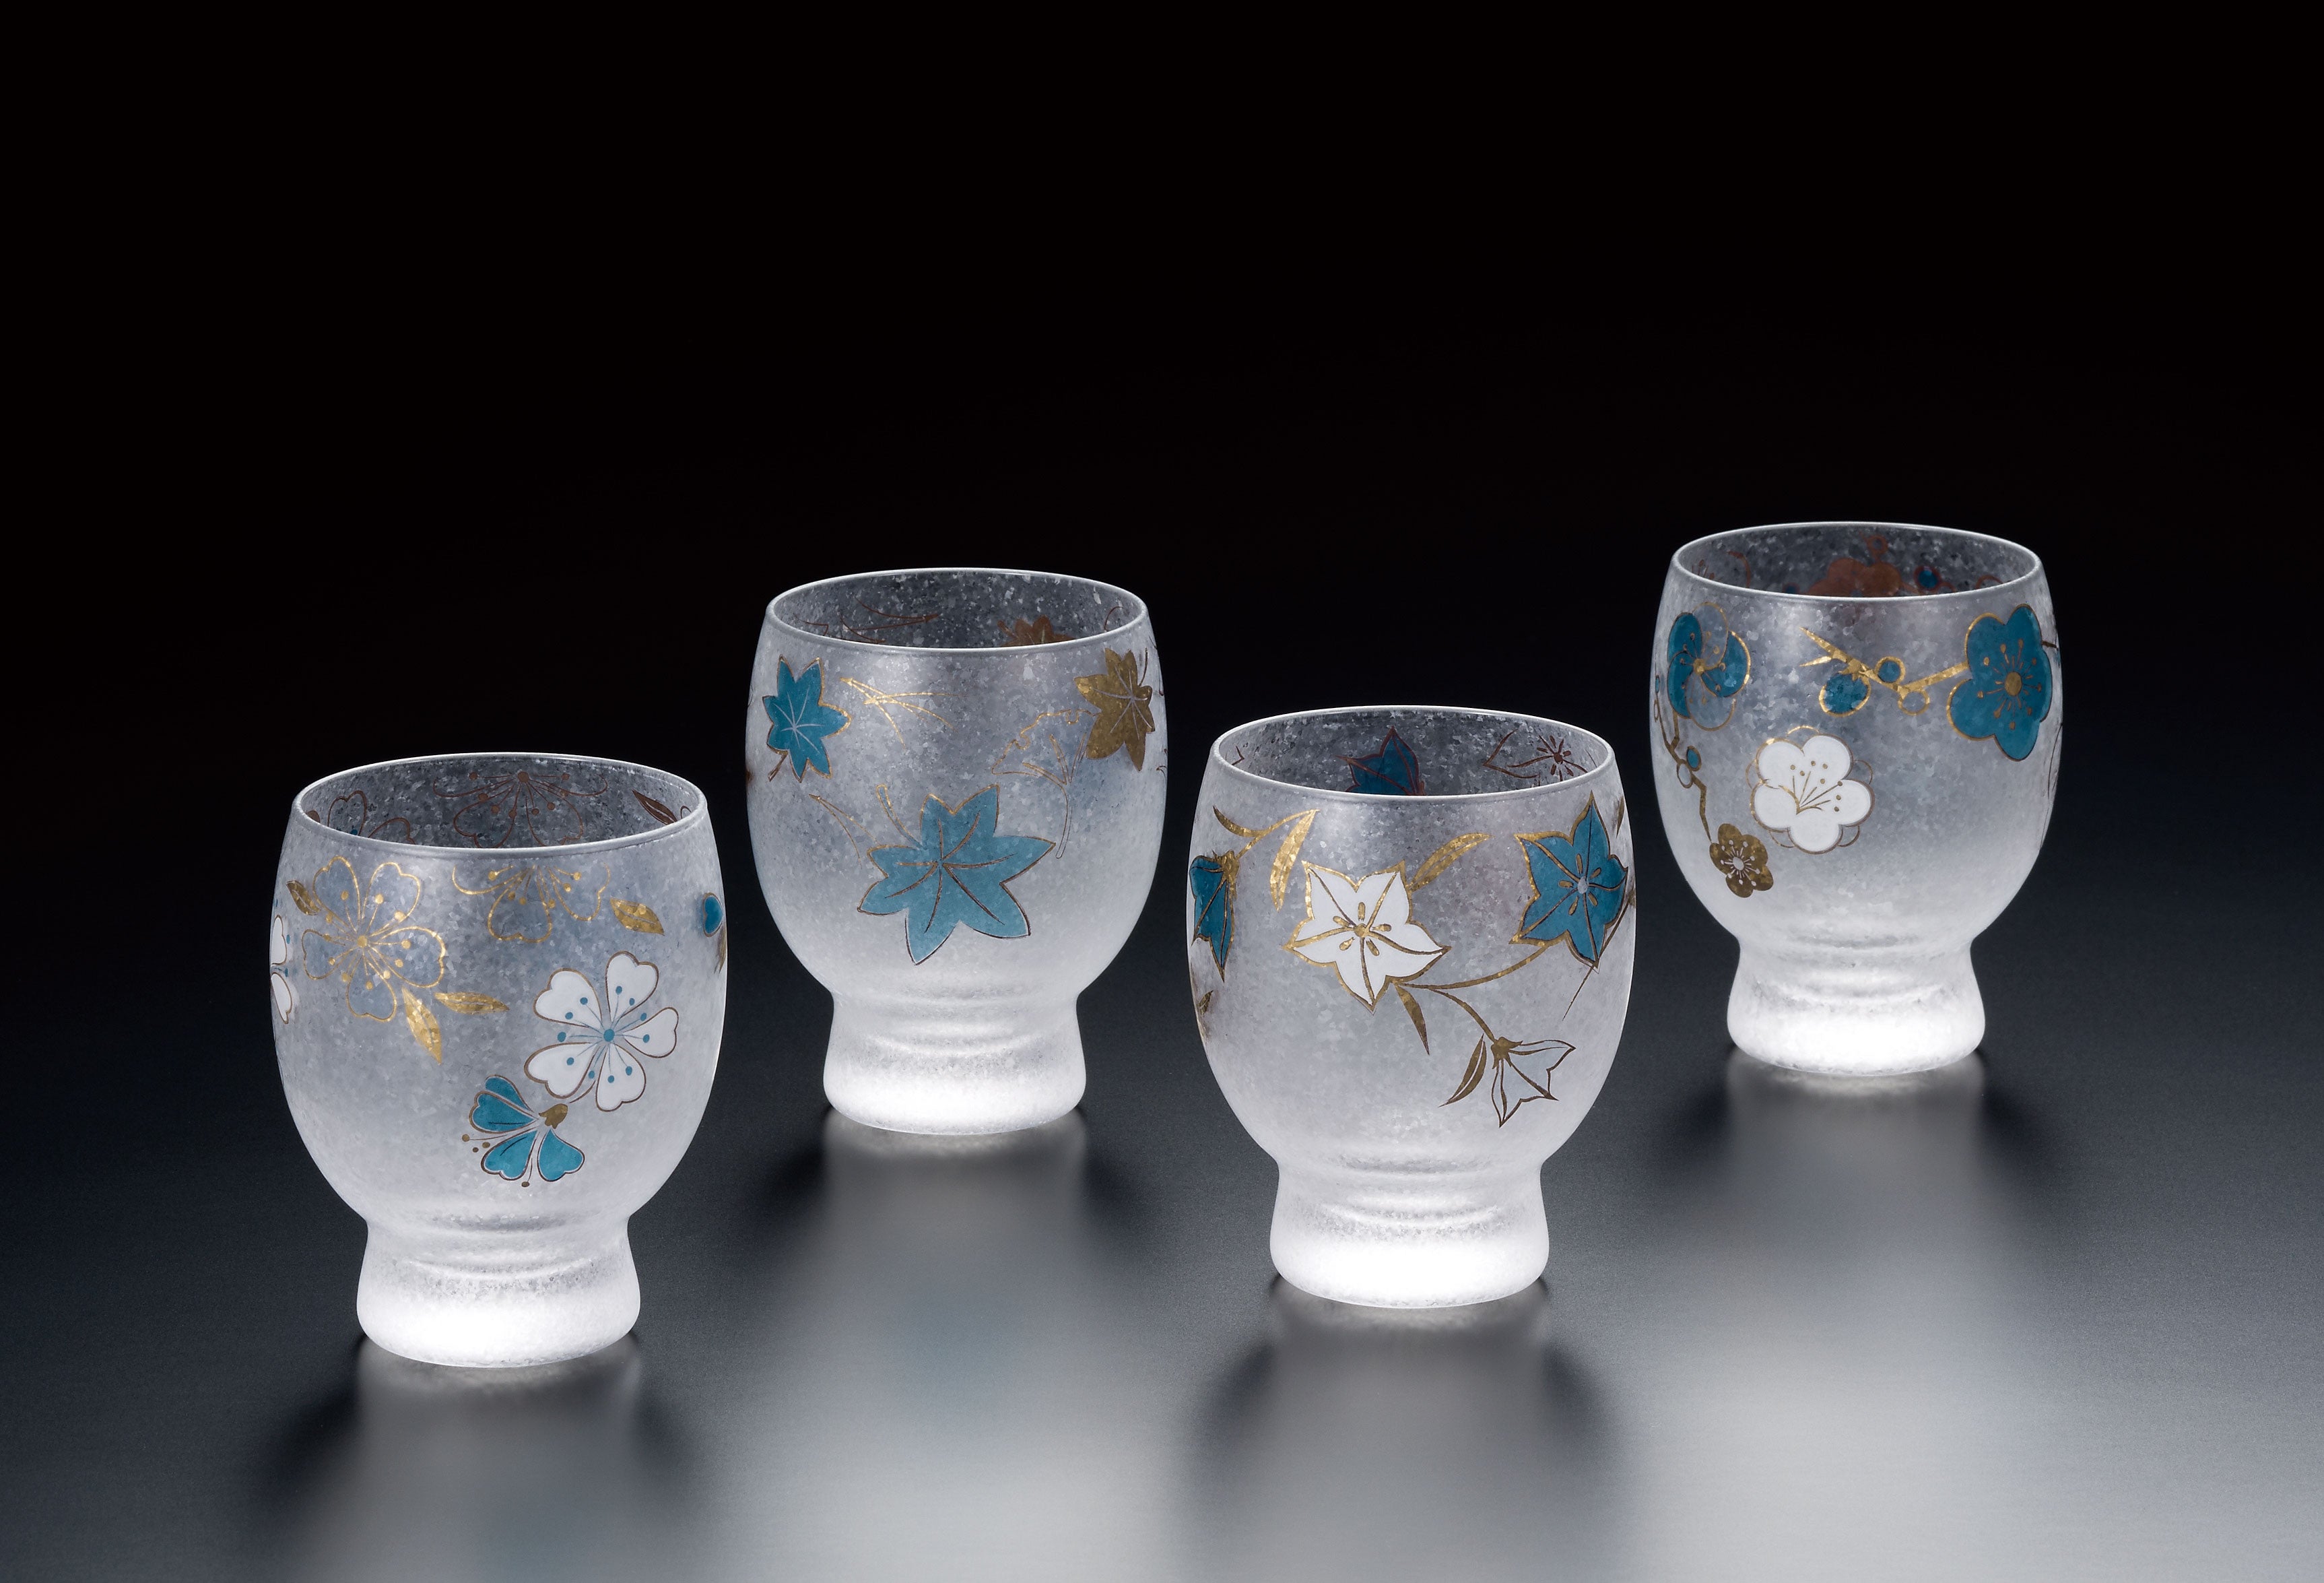 Set de 4 verres à Saké japonais, BLUE SHIKI